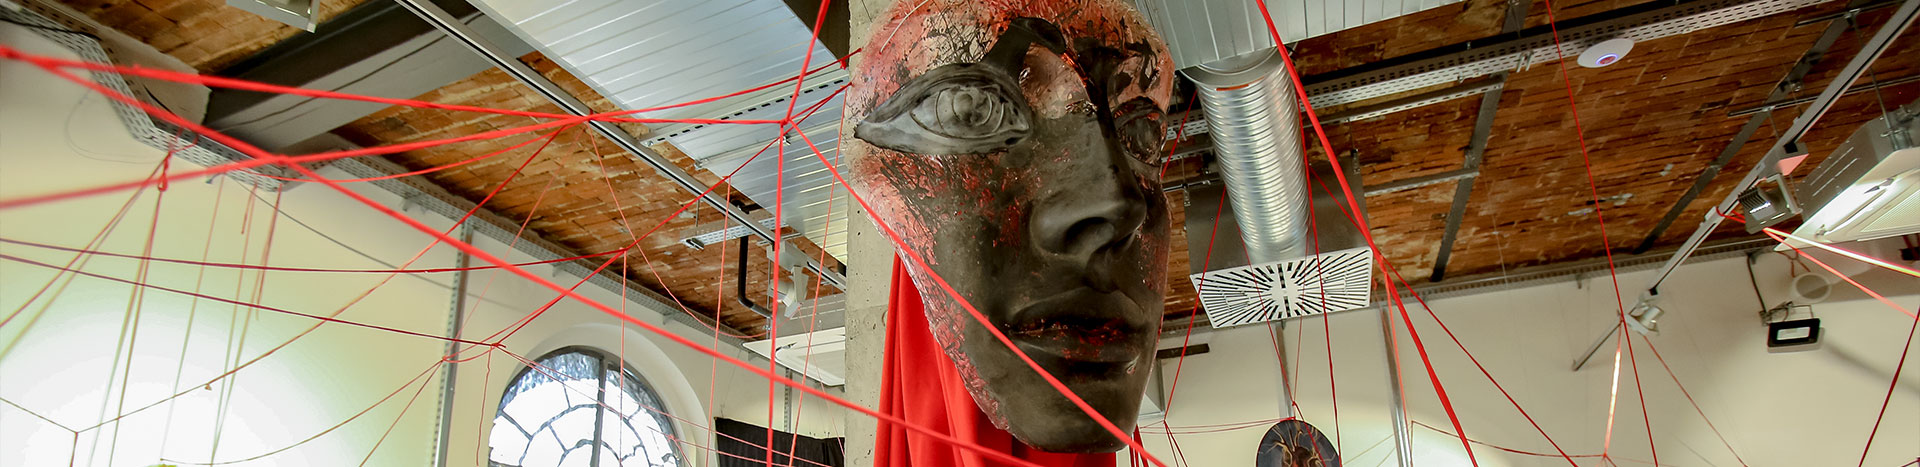 Fotografia przedstawia element ekspozycji. To maska, zawieszona wokół czerwonych sznurków.